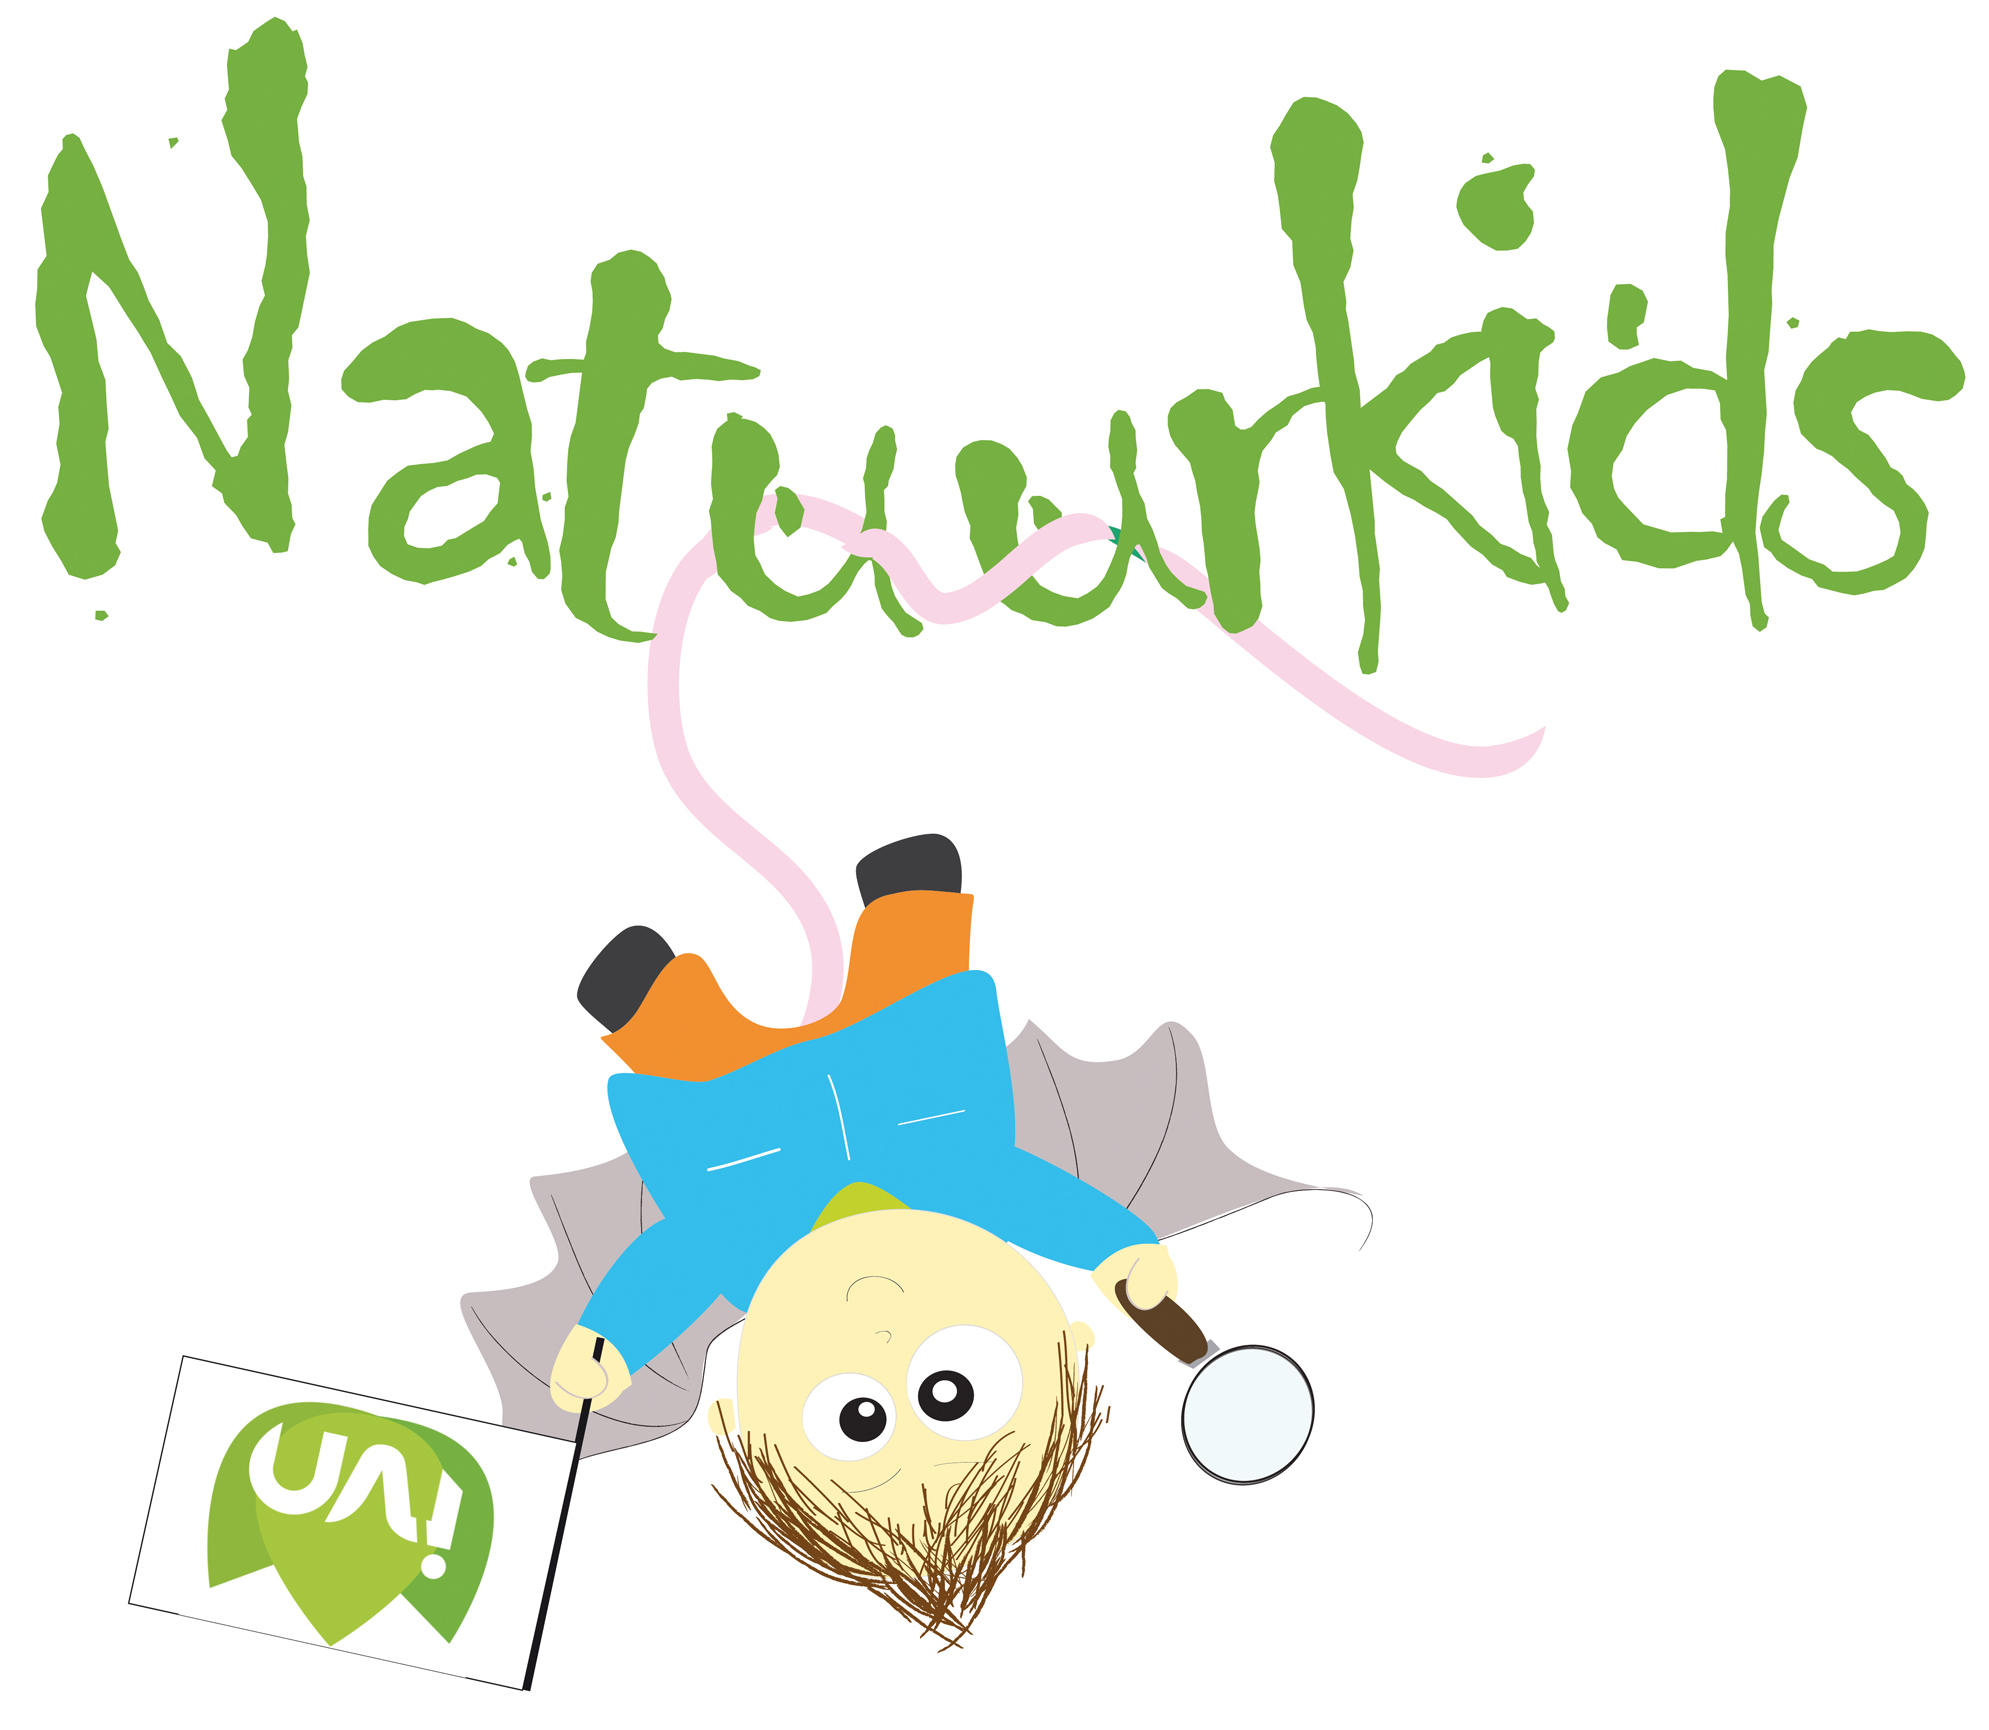 IVN Natuurkids, logo